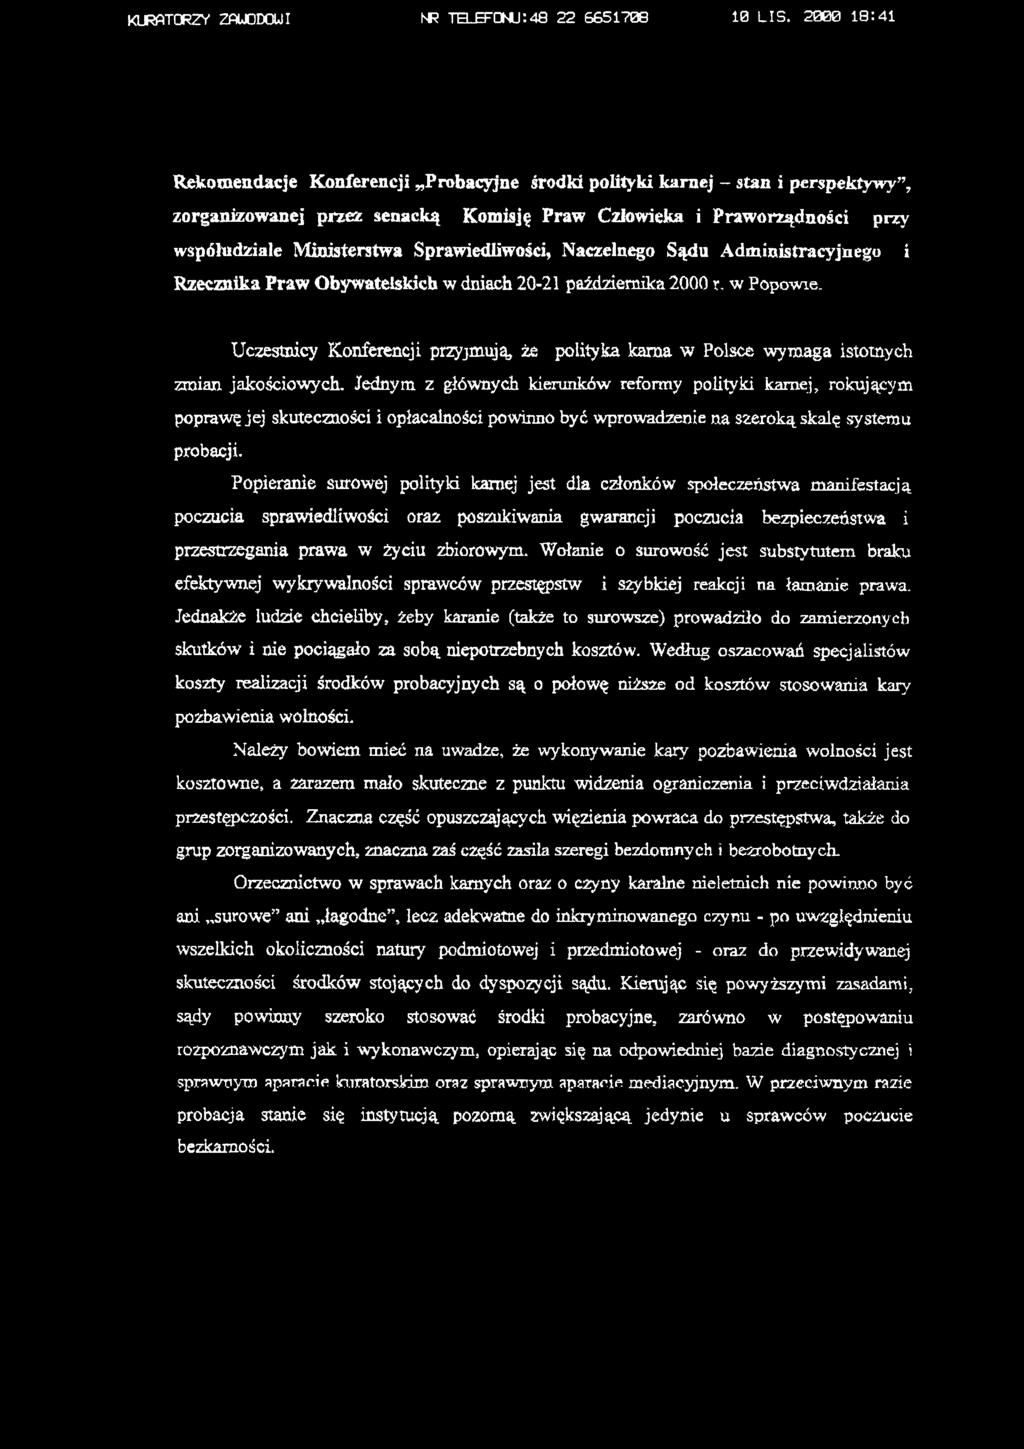 Sprawiedliwości, Naczelnego Sądu Administracyjnego i Rzecznika Praw Obywatelskich w dniach 20-21 października 2000 r, w Popowie.